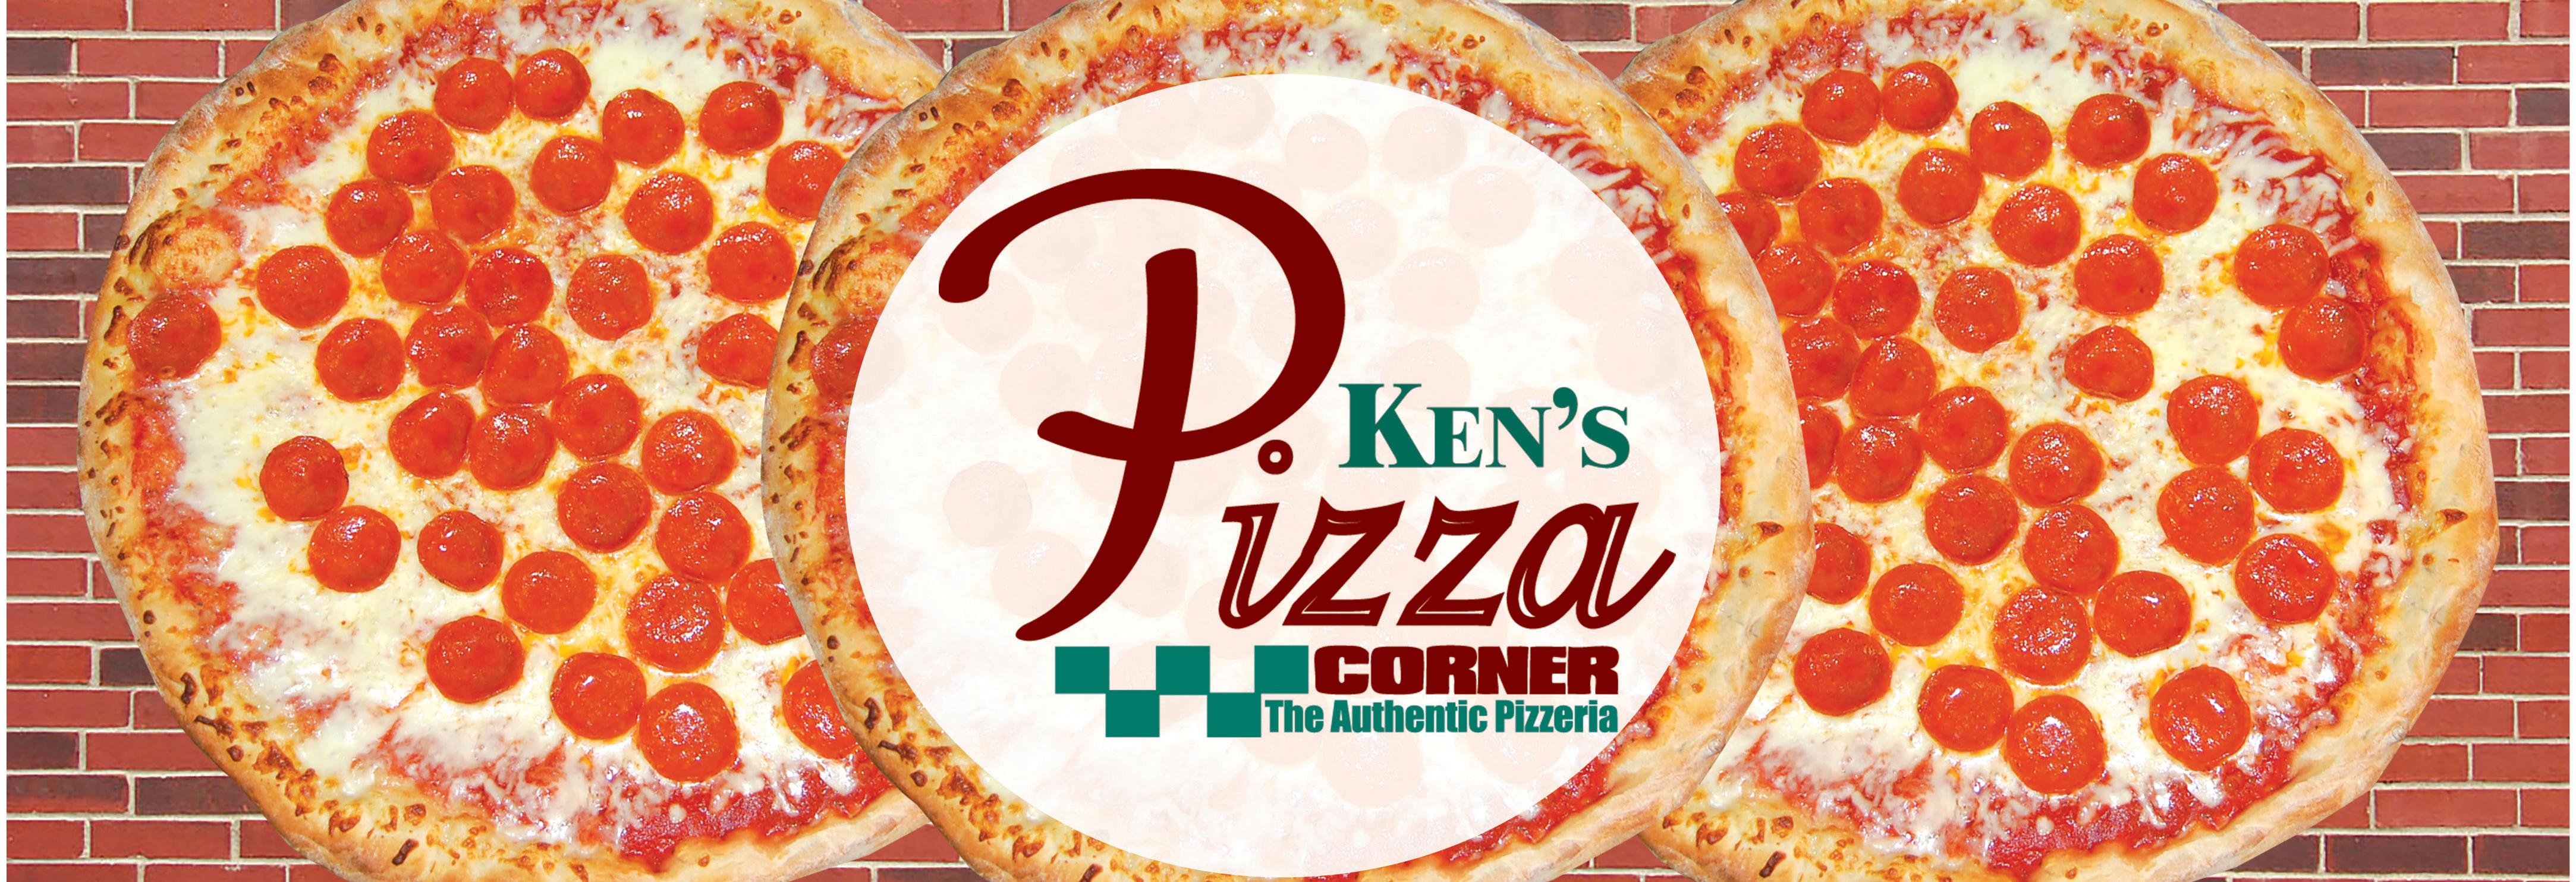 KEN'S PIZZA CORNER RESTAURANT in WEST HENRIETTA, NY Local Coupons